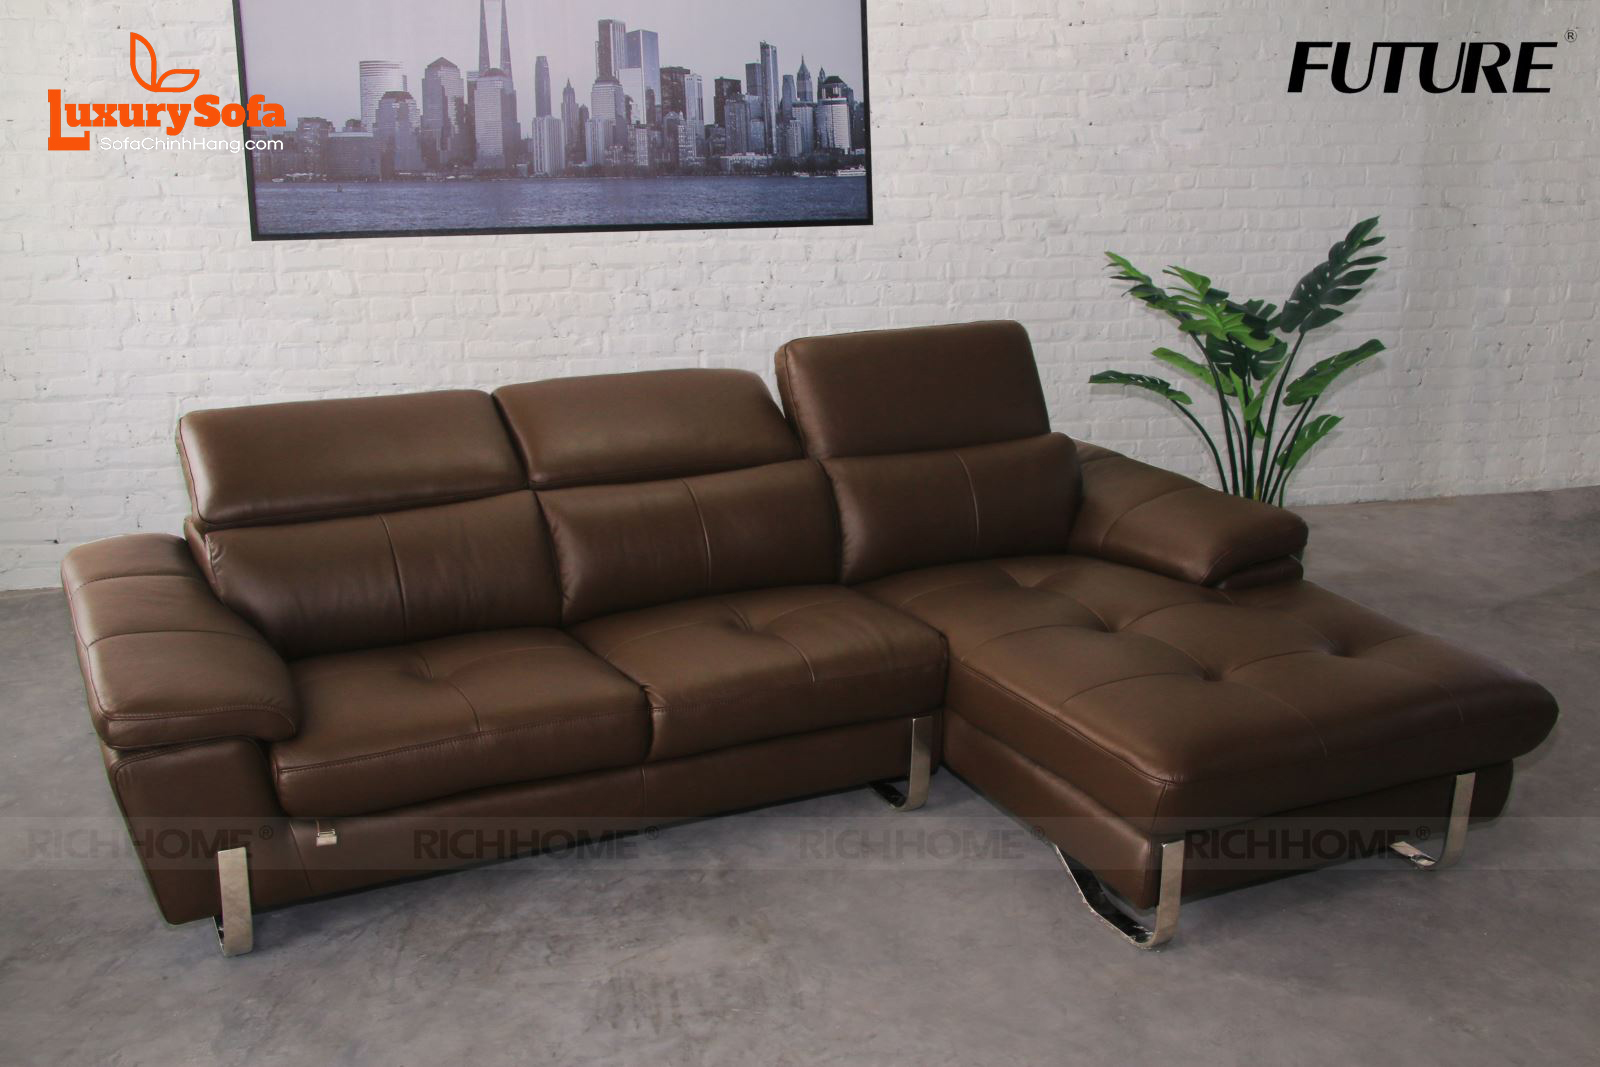 Xem ngay: Các mẫu sofa nhập khẩu đẹp từ Malaysia